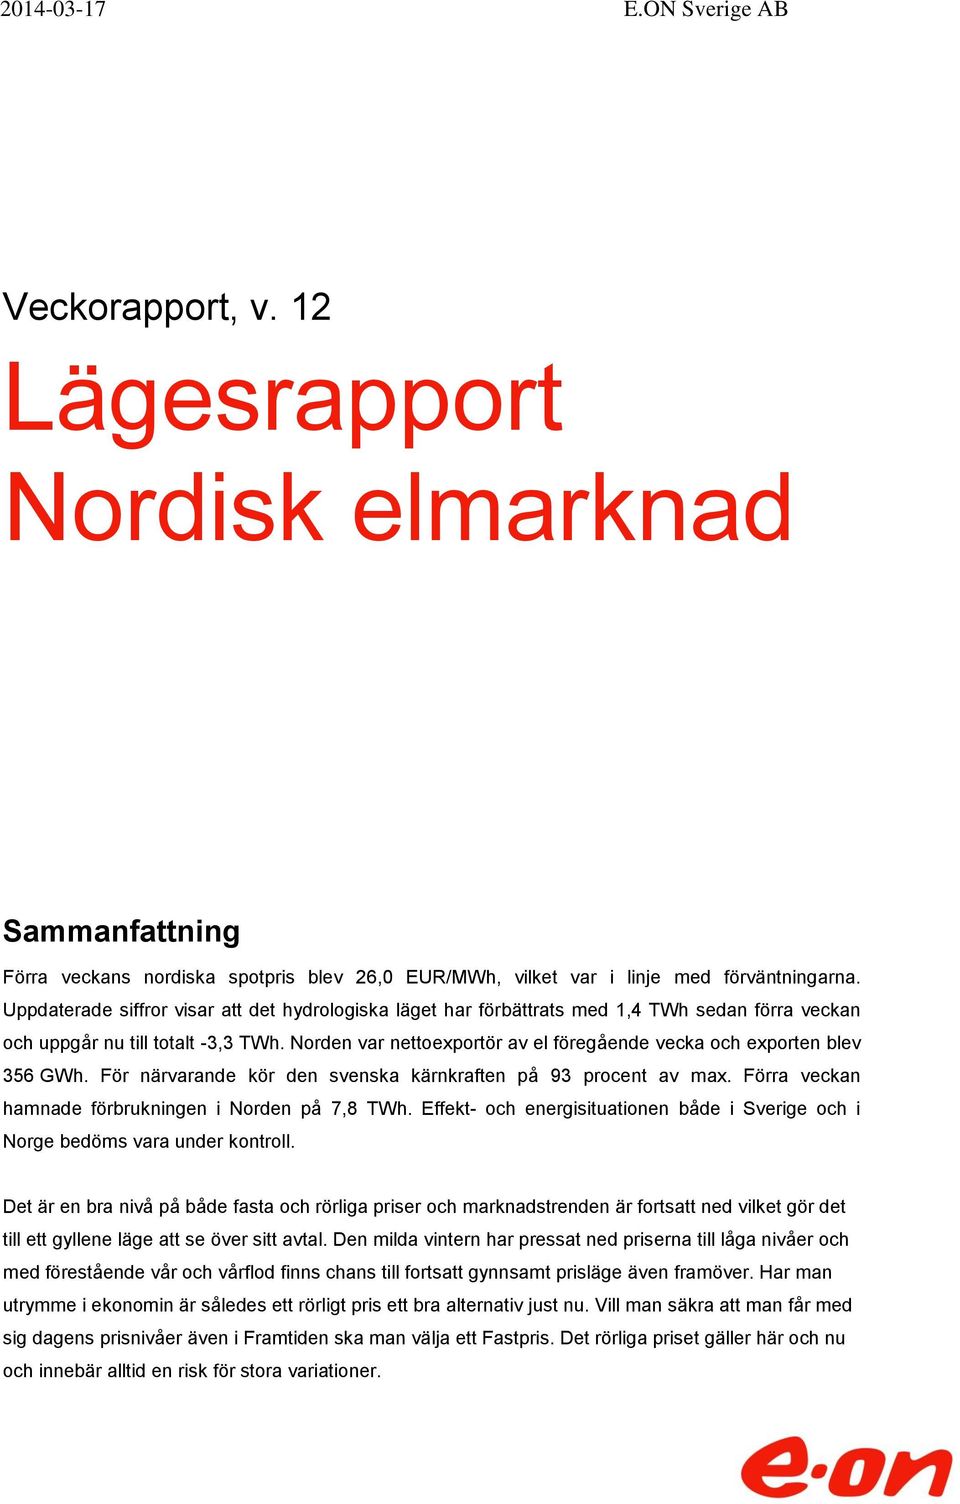 Norden var nettoexportör av el föregående vecka och exporten blev 356 GWh. För närvarande kör den svenska kärnkraften på 93 procent av max. Förra veckan hamnade förbrukningen i Norden på 7,8 TWh.